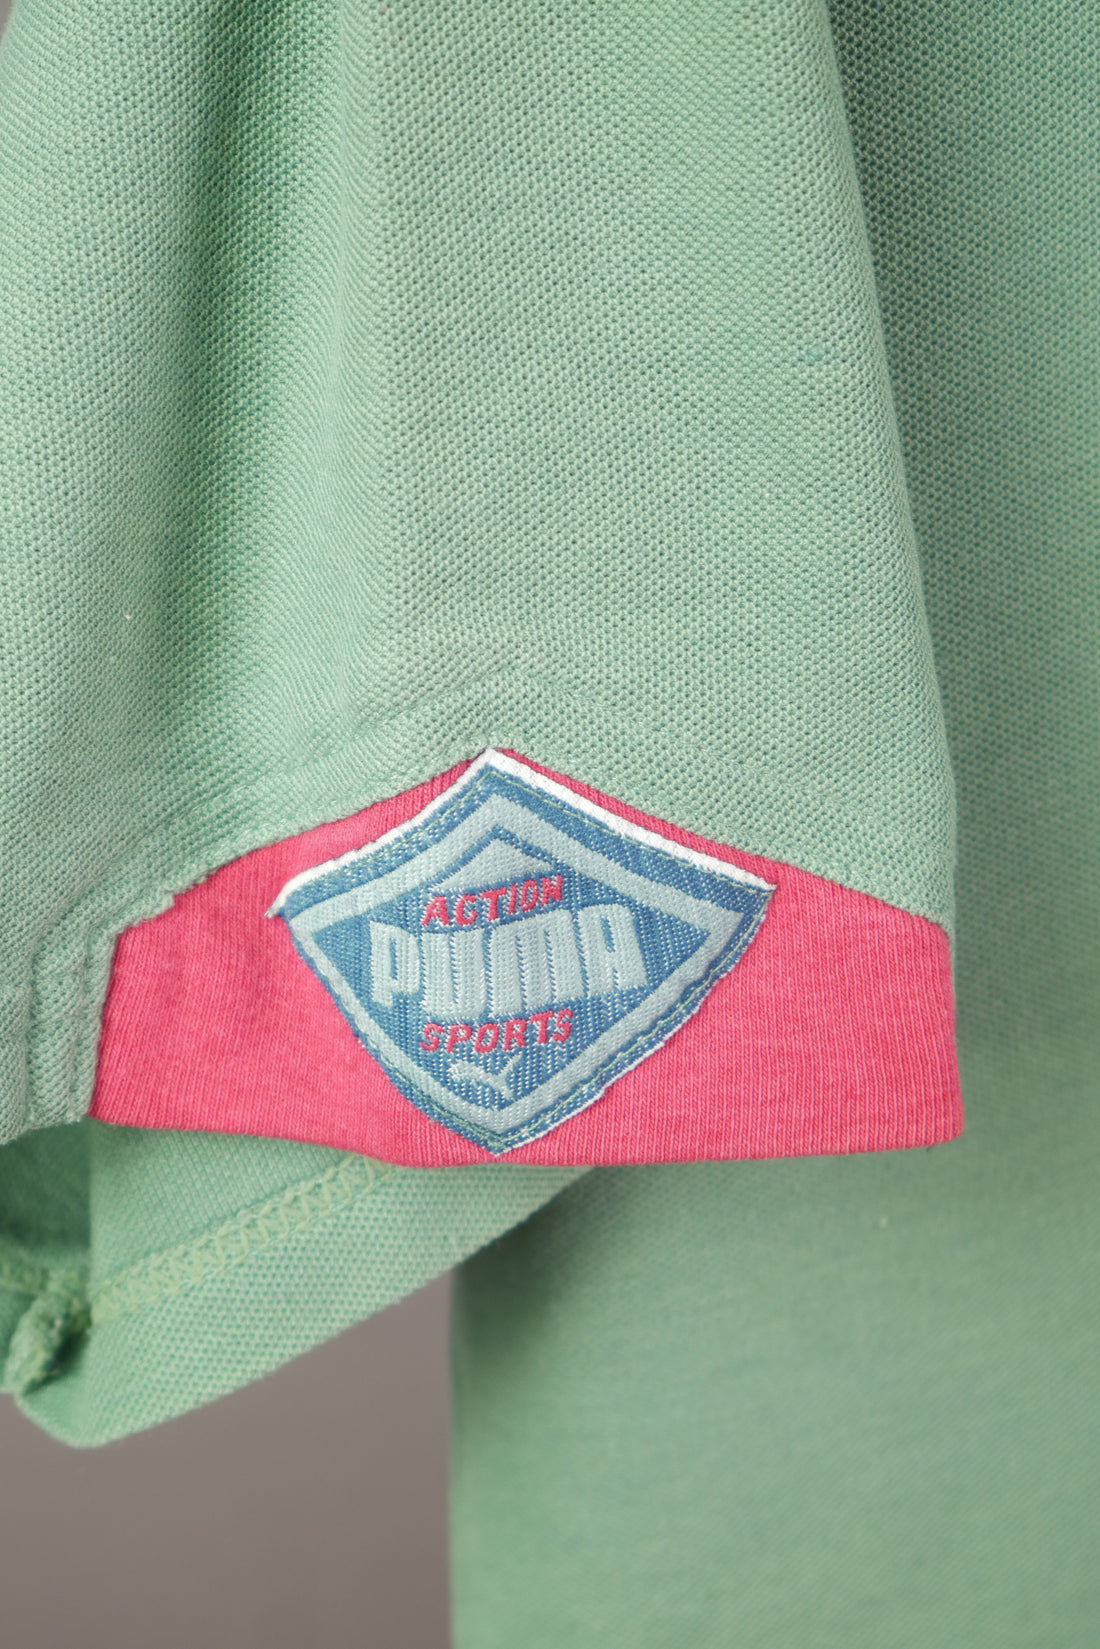 The Vintage Puma Polo Shirt (L)